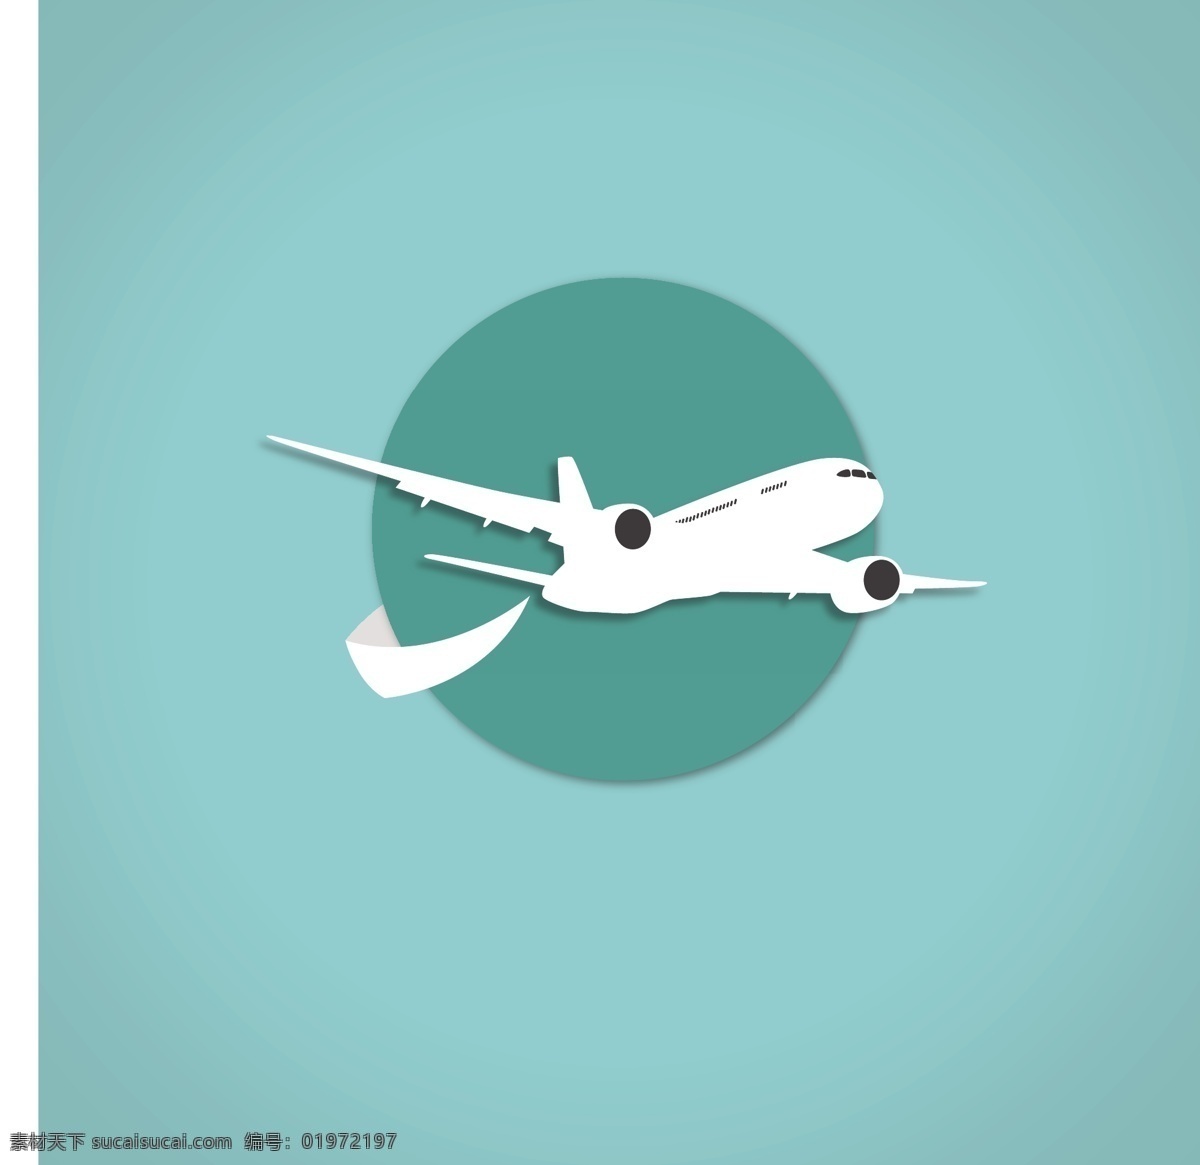 飞机 图标 logo 模板 圆形 抽象 航空 logo模板